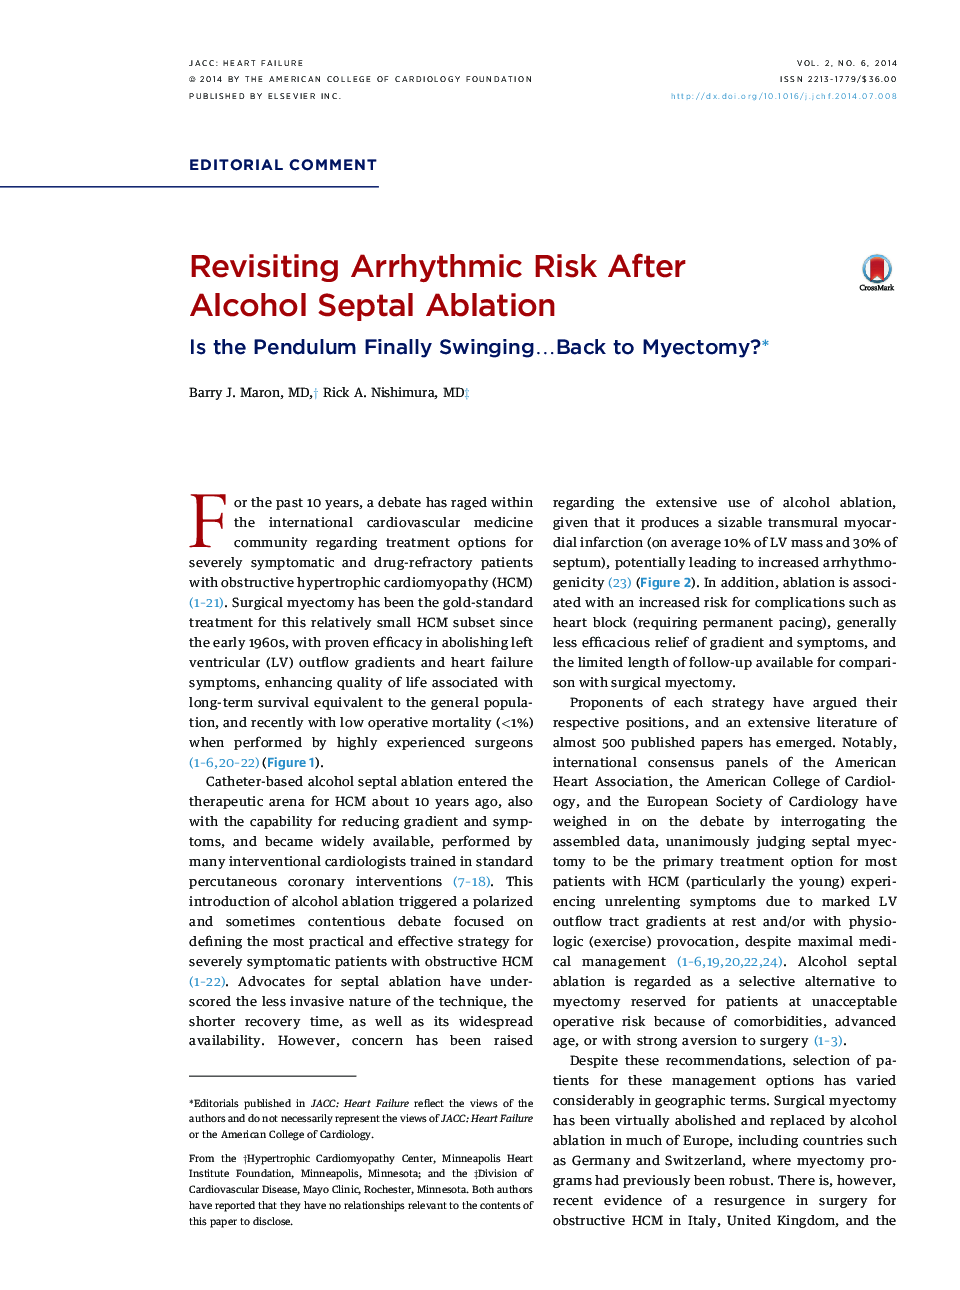 Revisiting Arrhythmic Risk After AlcoholÂ Septal Ablation